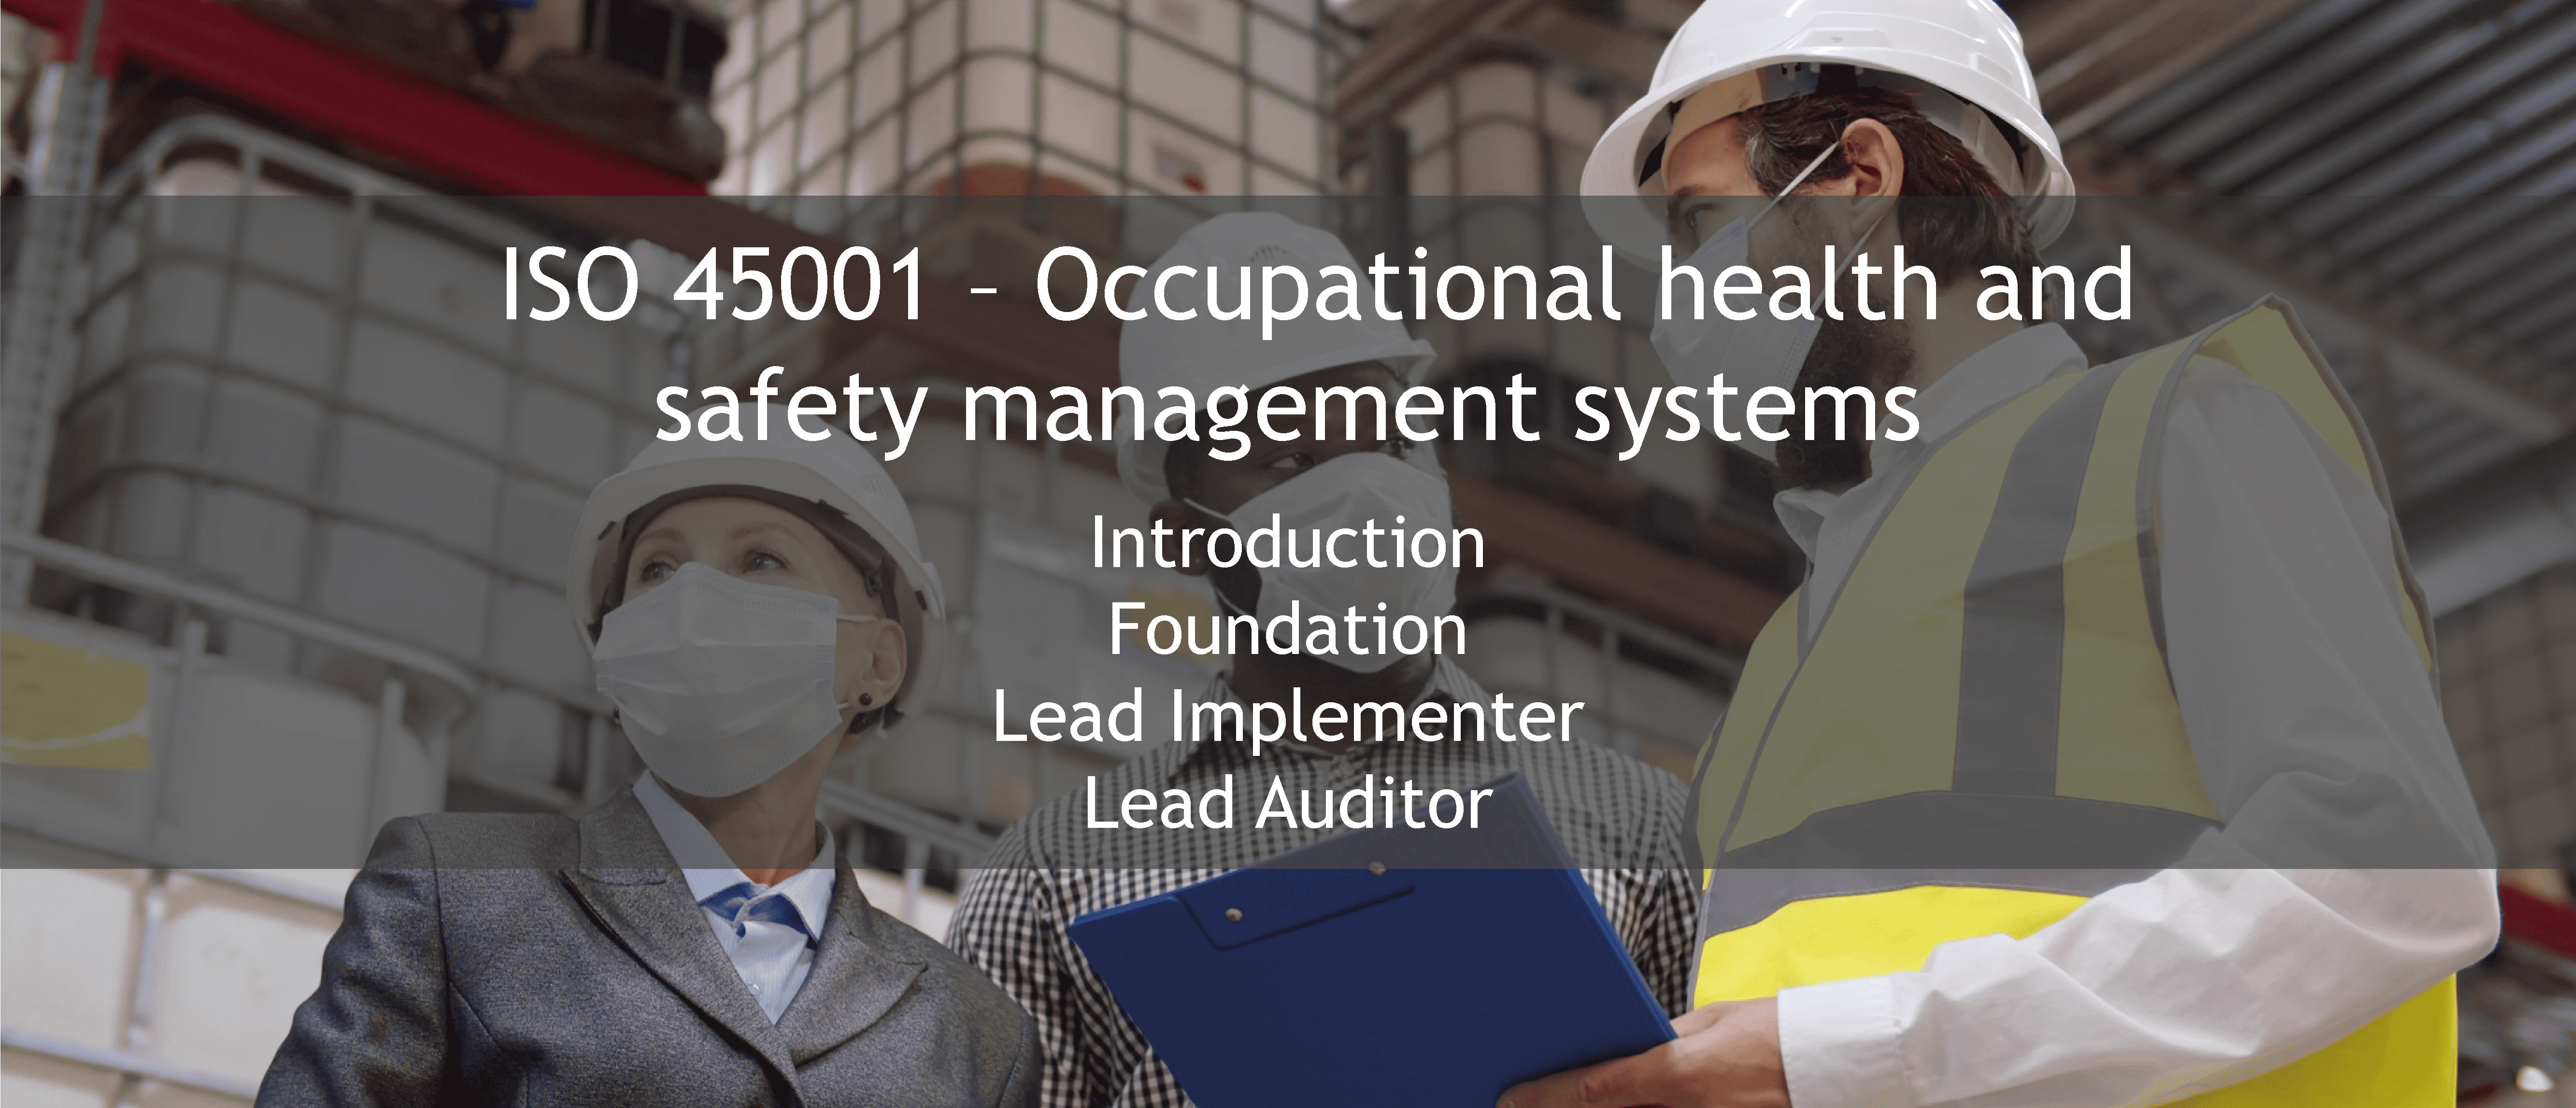 ISO 45001 training offer - ISO 26000 Responsabilité sociétale